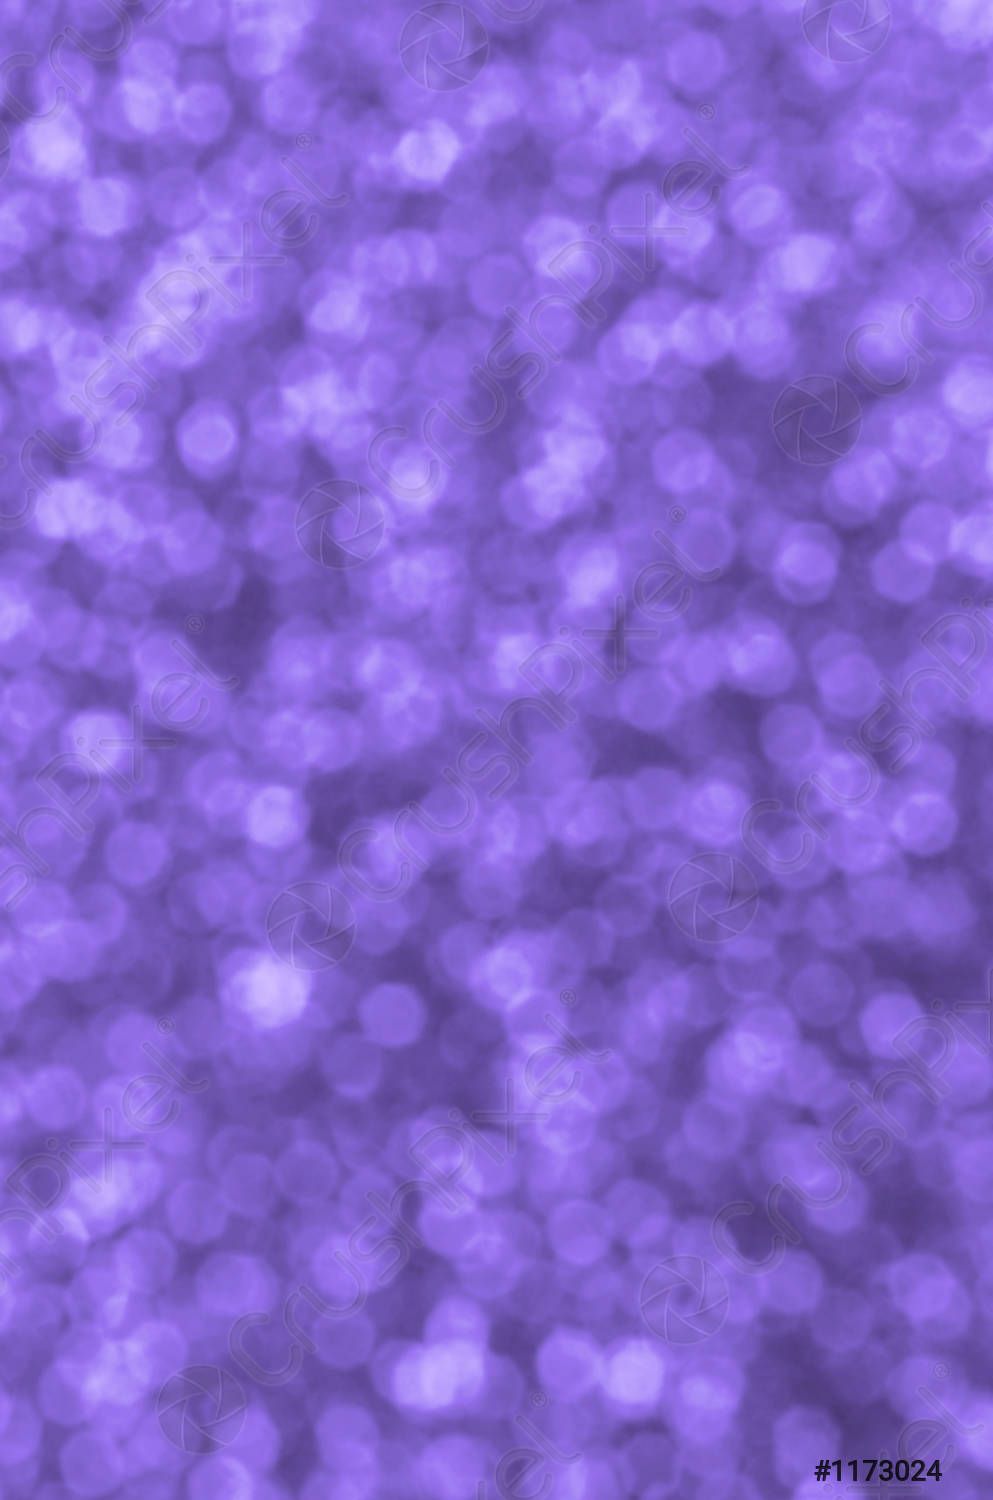 Verschwommen Hintergrundbild 993x1500. Verschwommene Violette Dekorative Pailletten Hintergrundbild Mit Glänzenden Bokeh Lichter Vorrätig 1173024